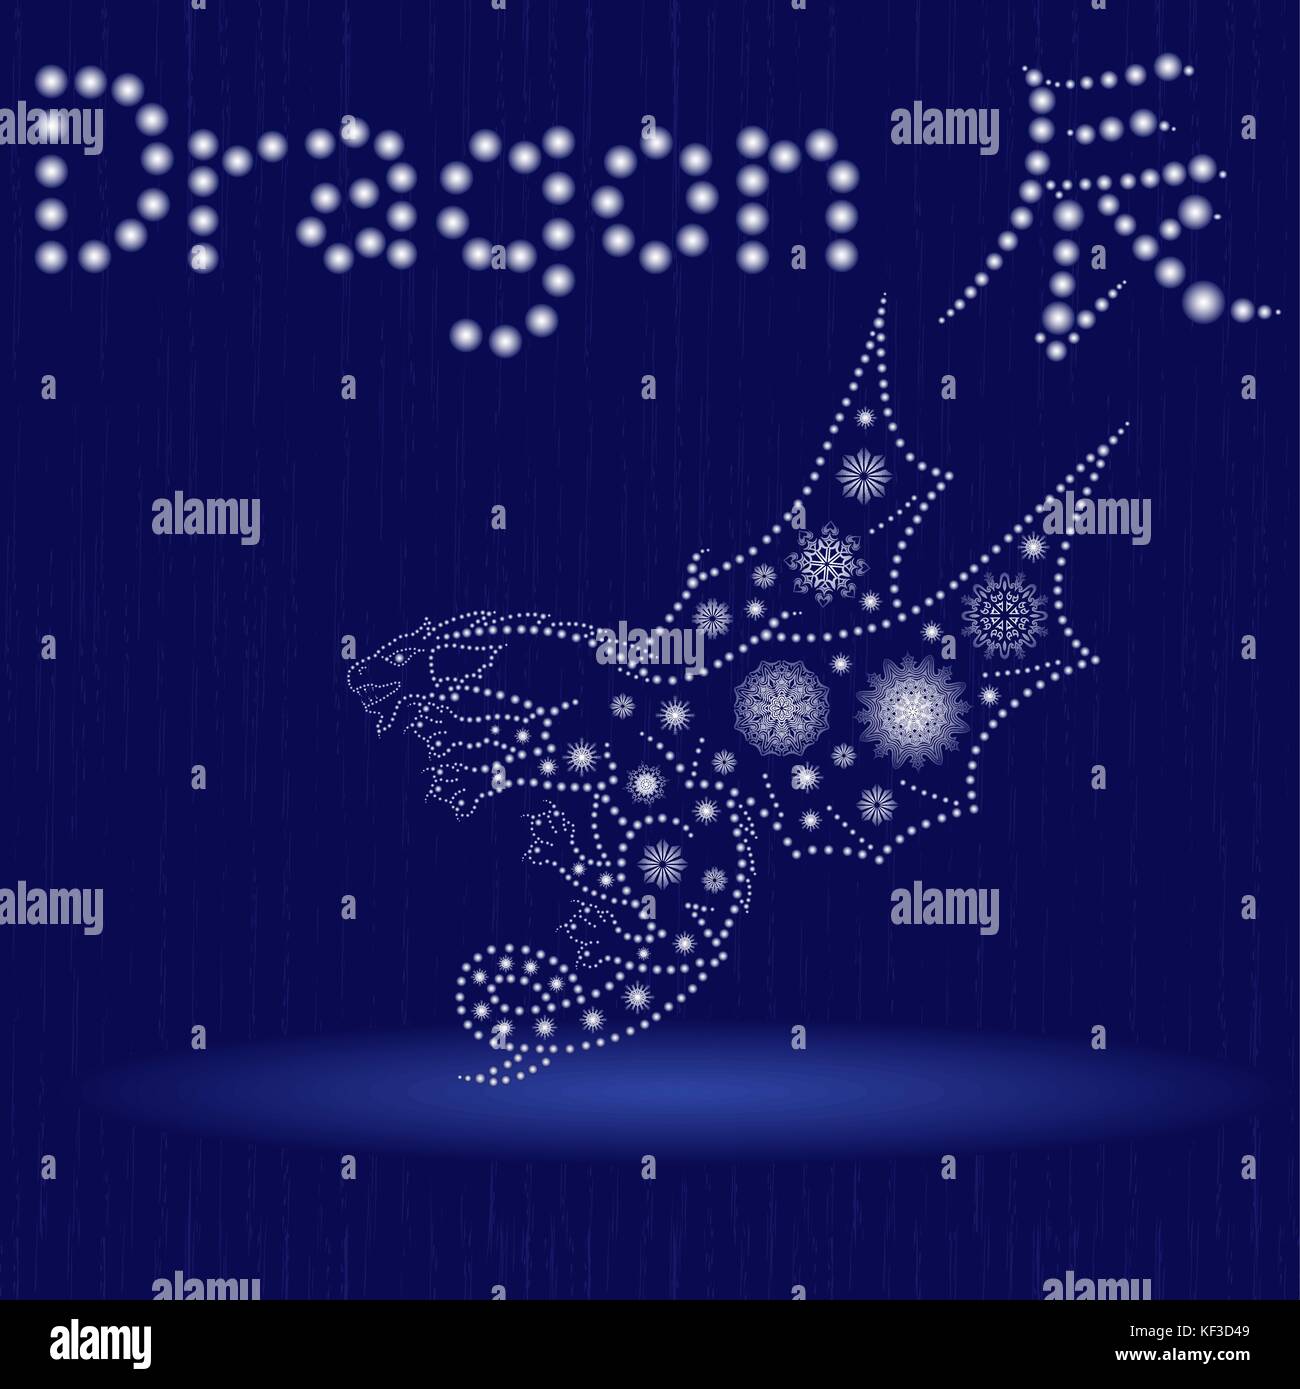 Il cinese segno zodiacale drago, elemento fisso della terra, simbolo del nuovo anno sul calendario Orientale, disegnati a mano illustrazione vettoriale con i fiocchi di neve e di luce Illustrazione Vettoriale